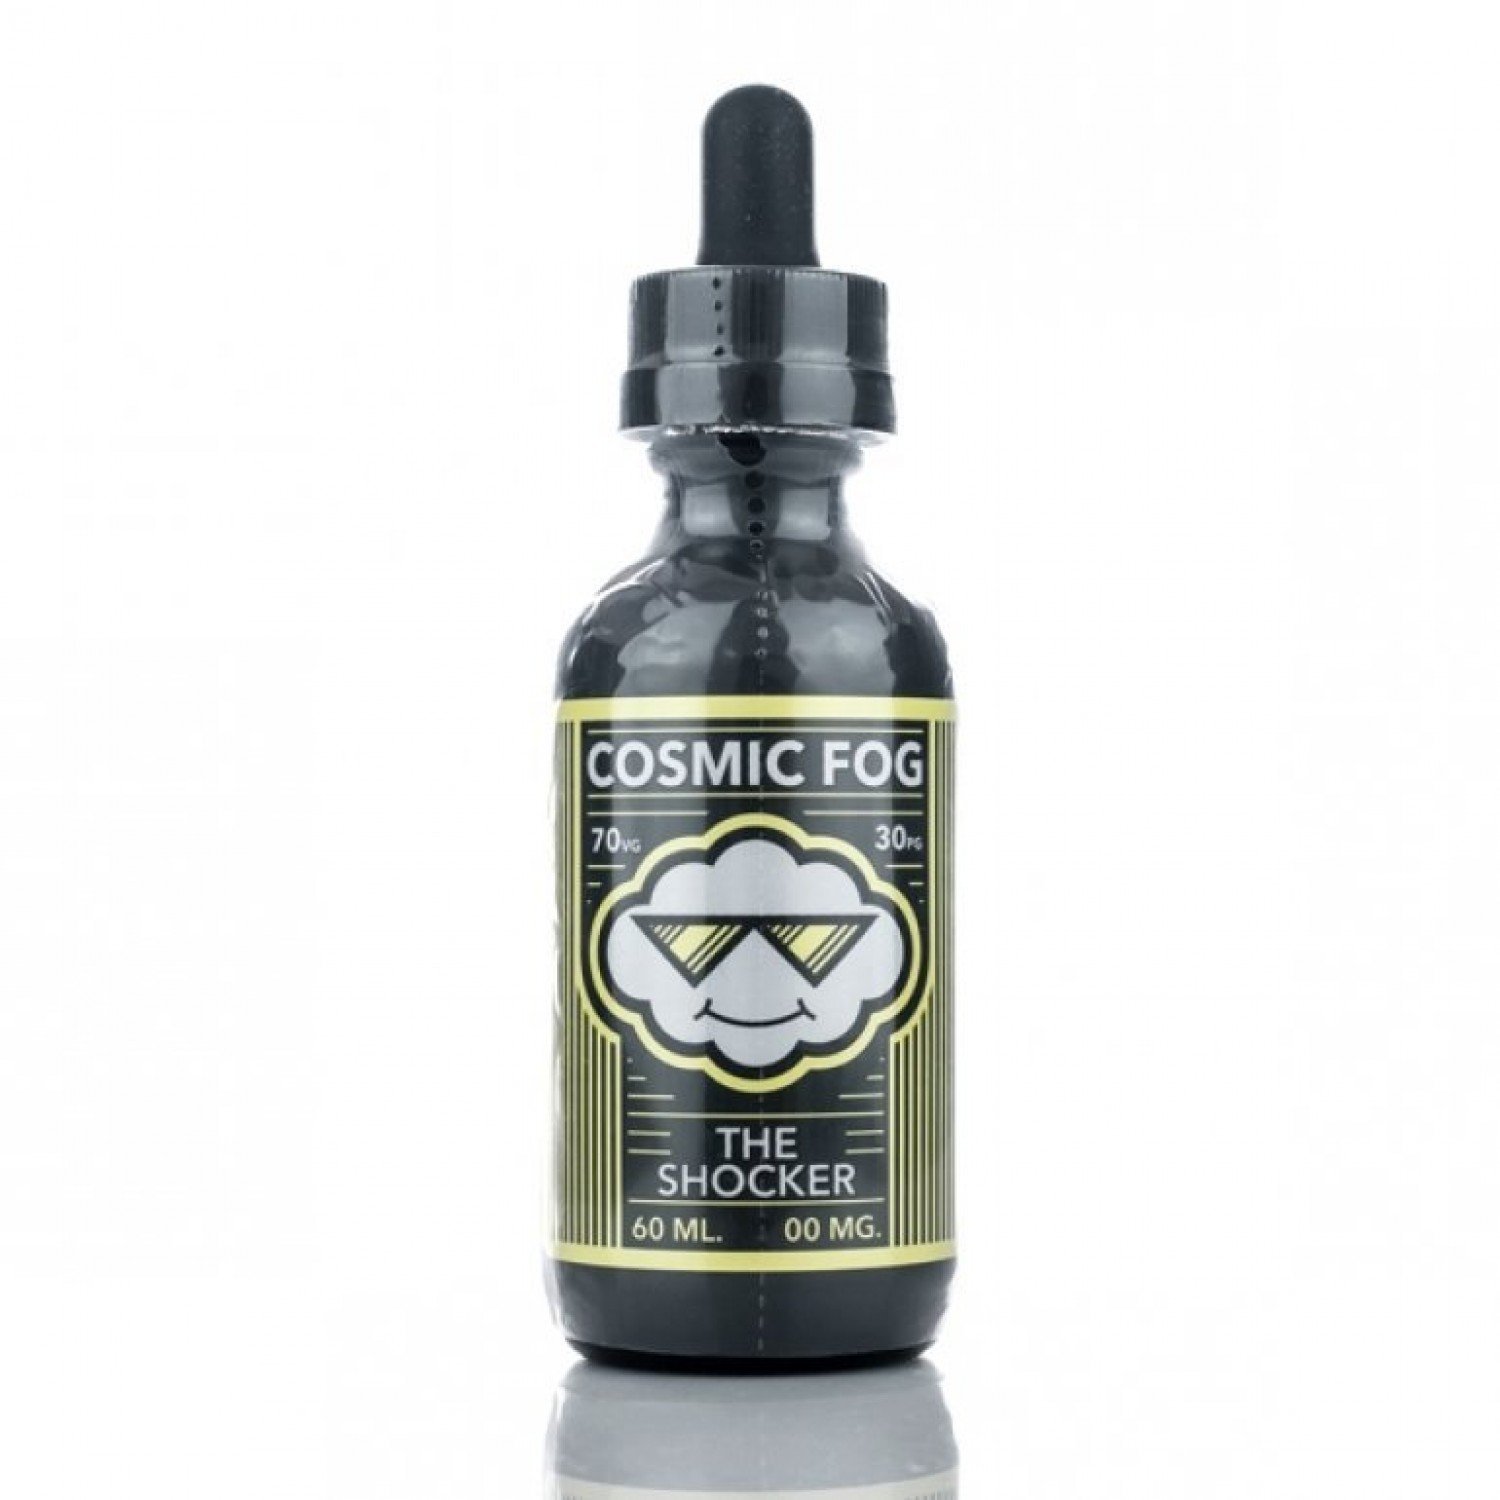 Cosmic Fog - The Shocker 60 ml Premium Likit